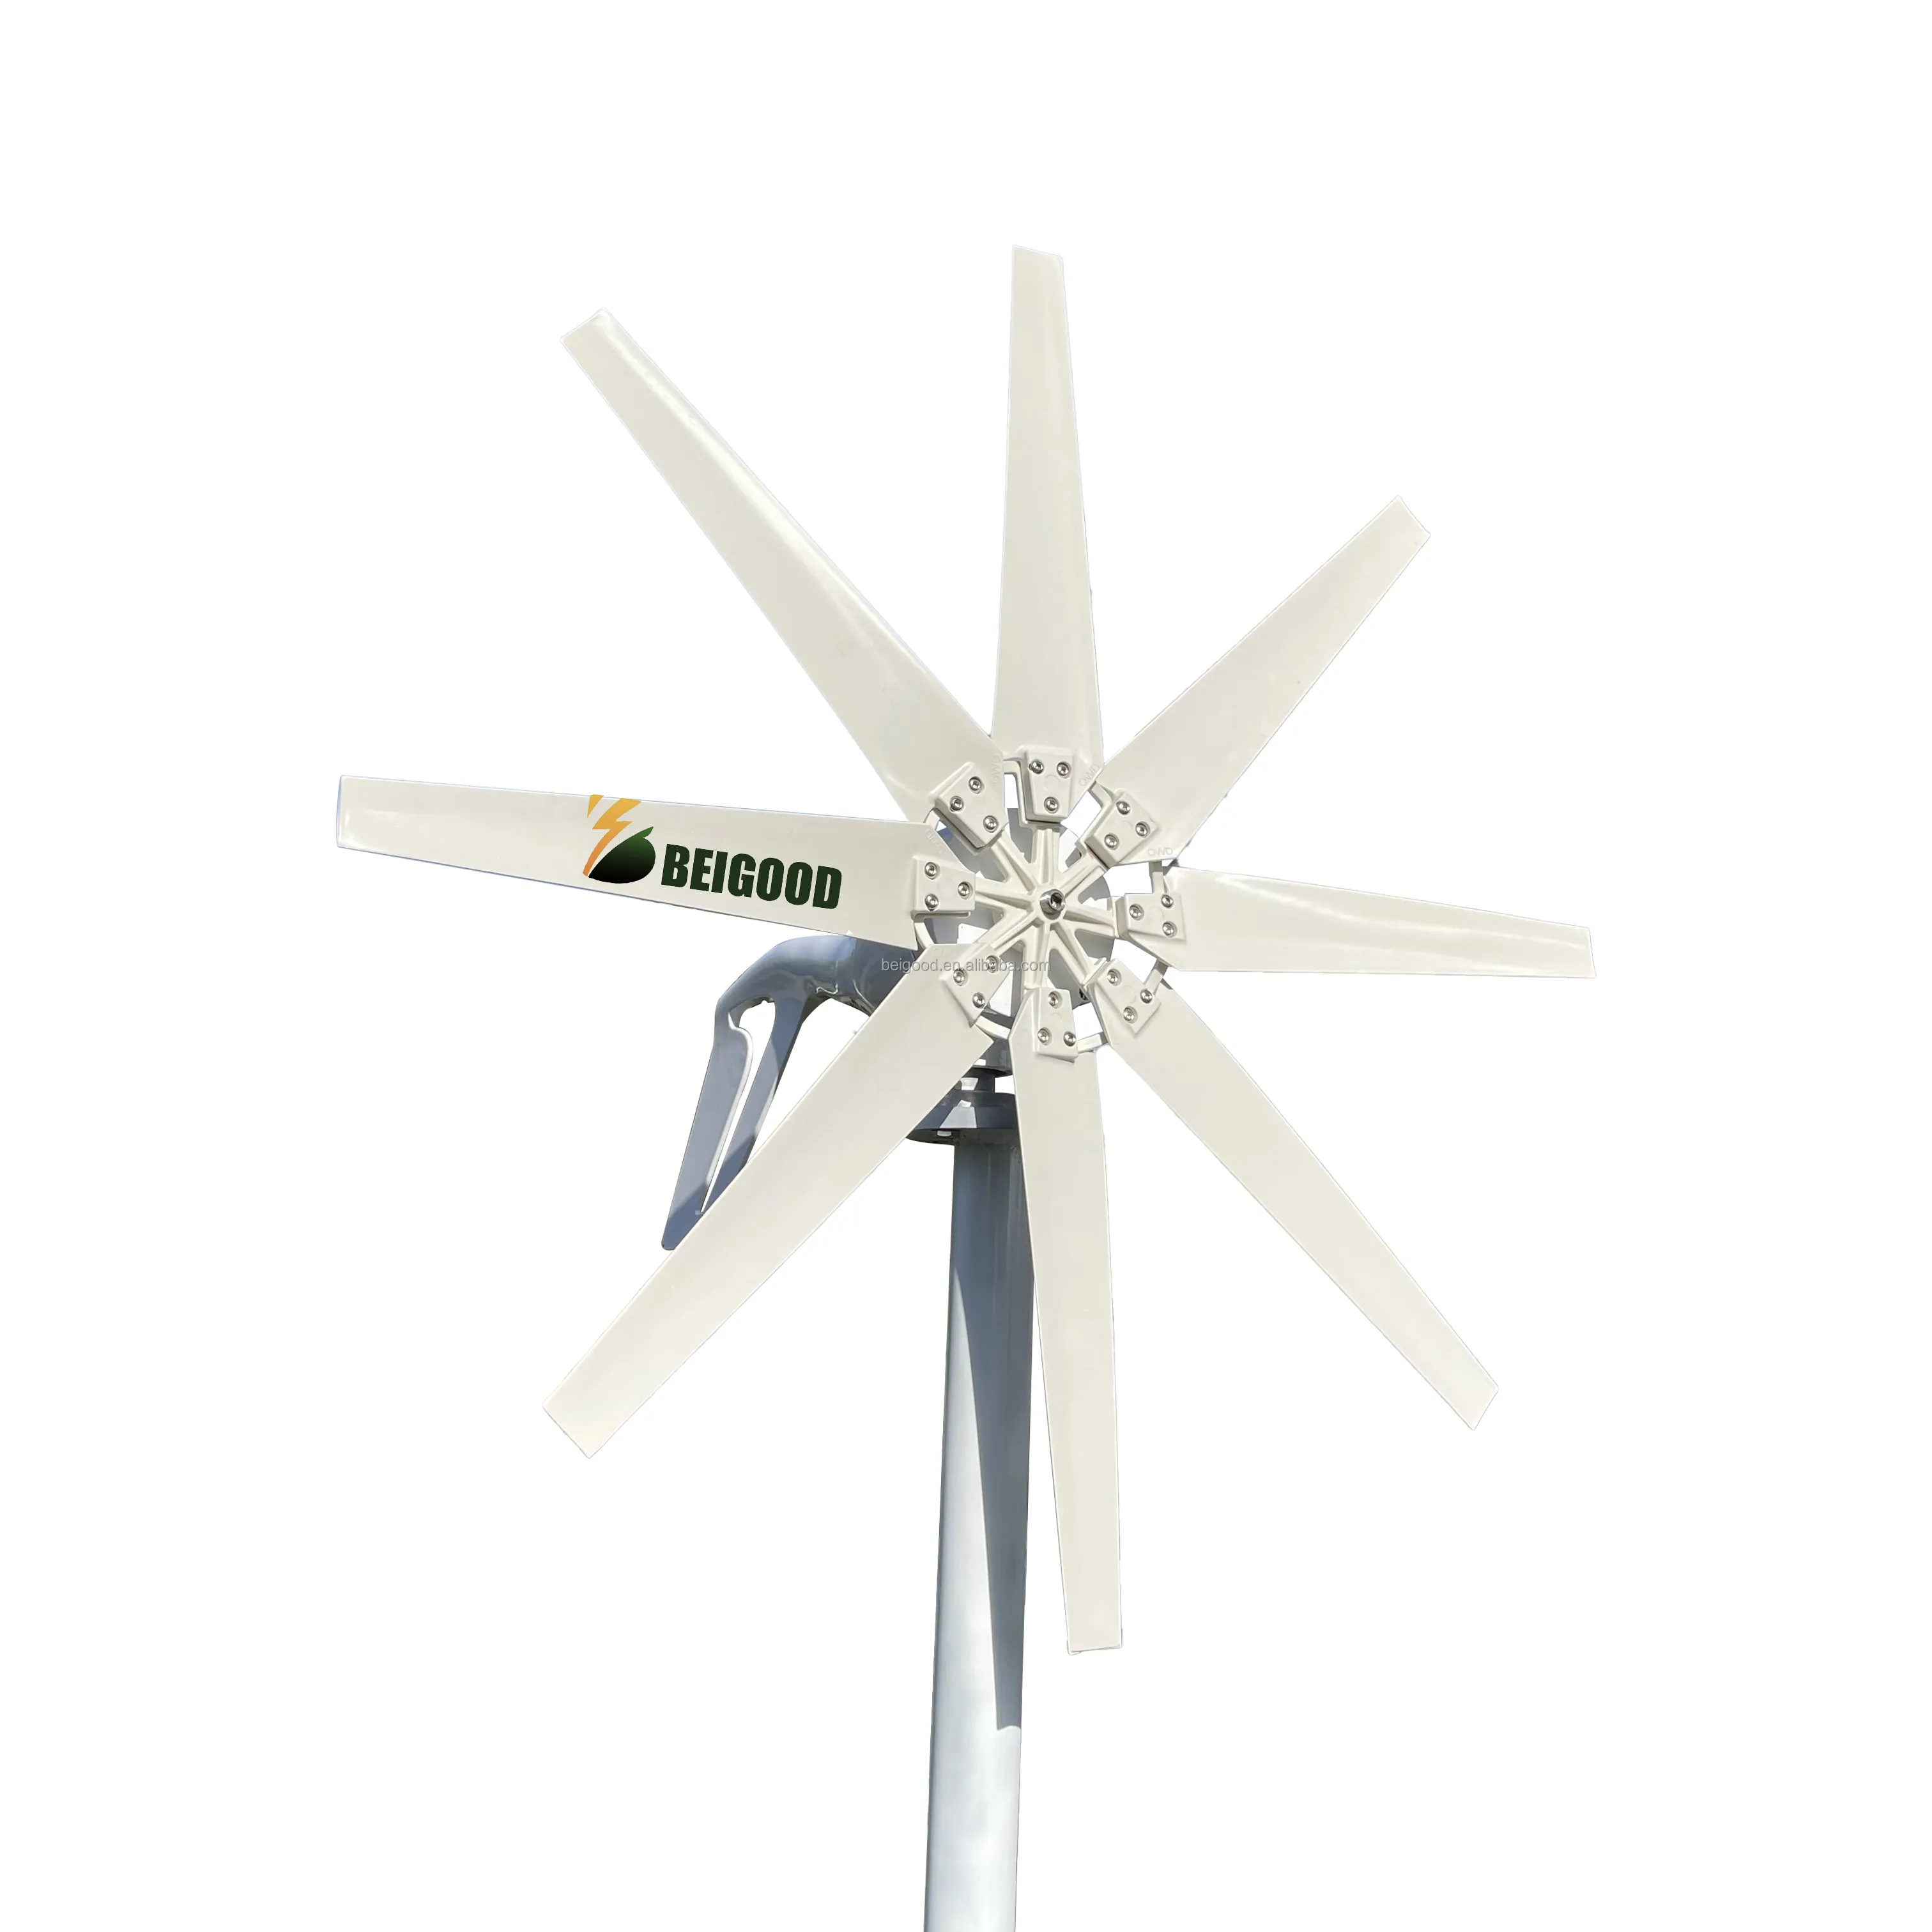 Merci di alta qualità 1kw 48v generatore di turbina eolica orizzontale per luce stradale generatore di vento verticale generatore portatile turbina eolica